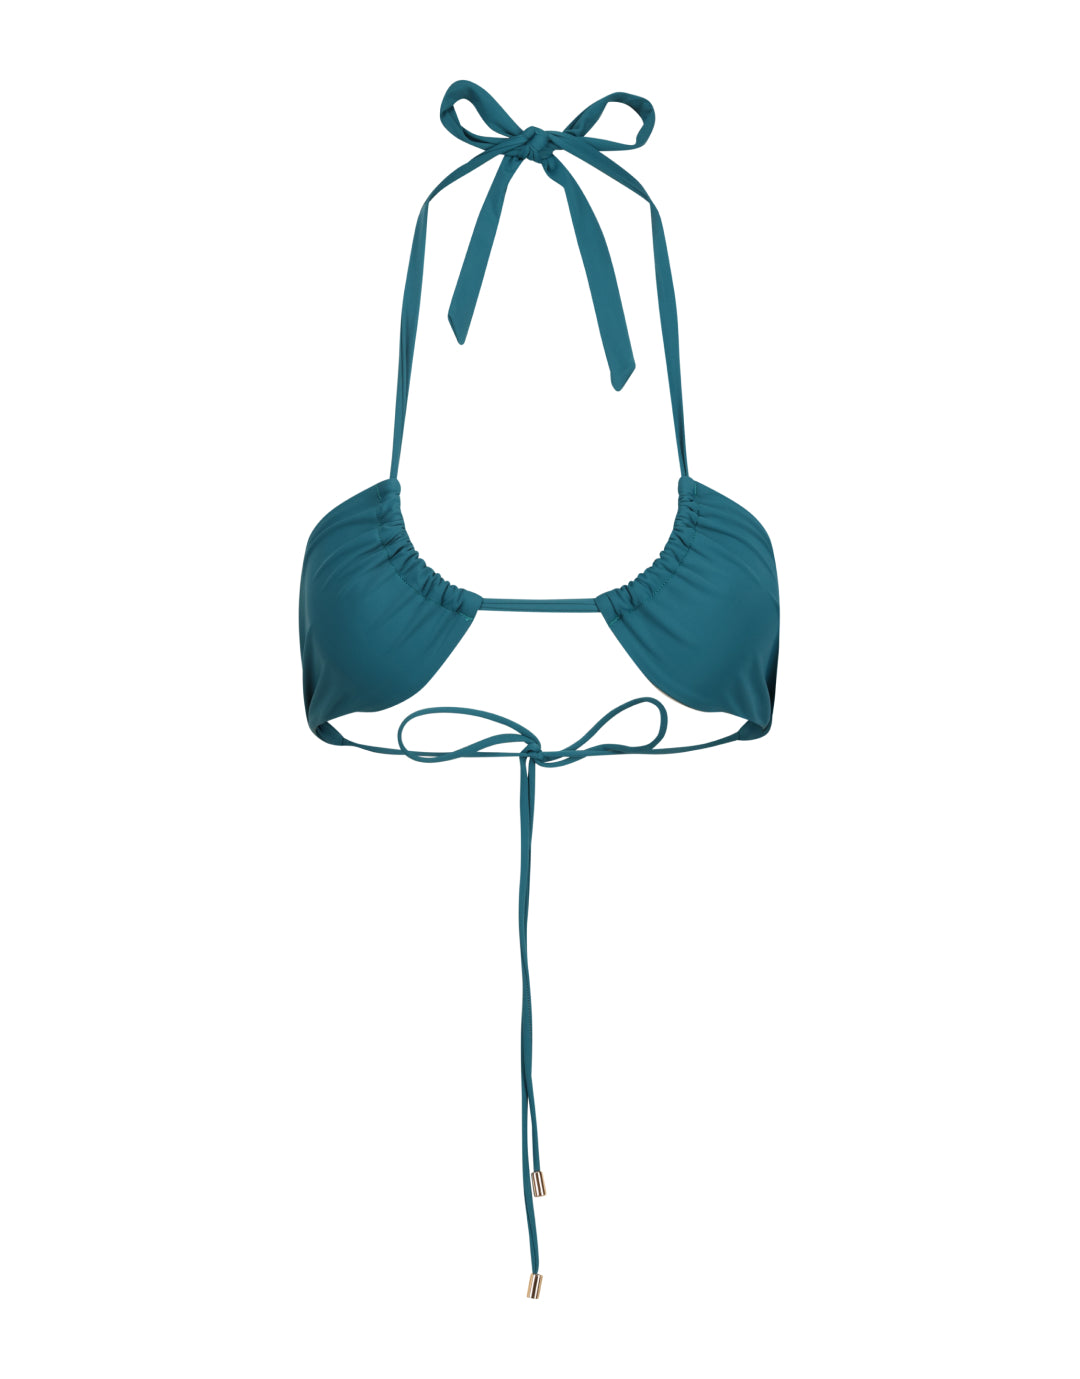 Agni 3-Way Tie Triangle Bikini Top // Teal Dark Turquoise Blue